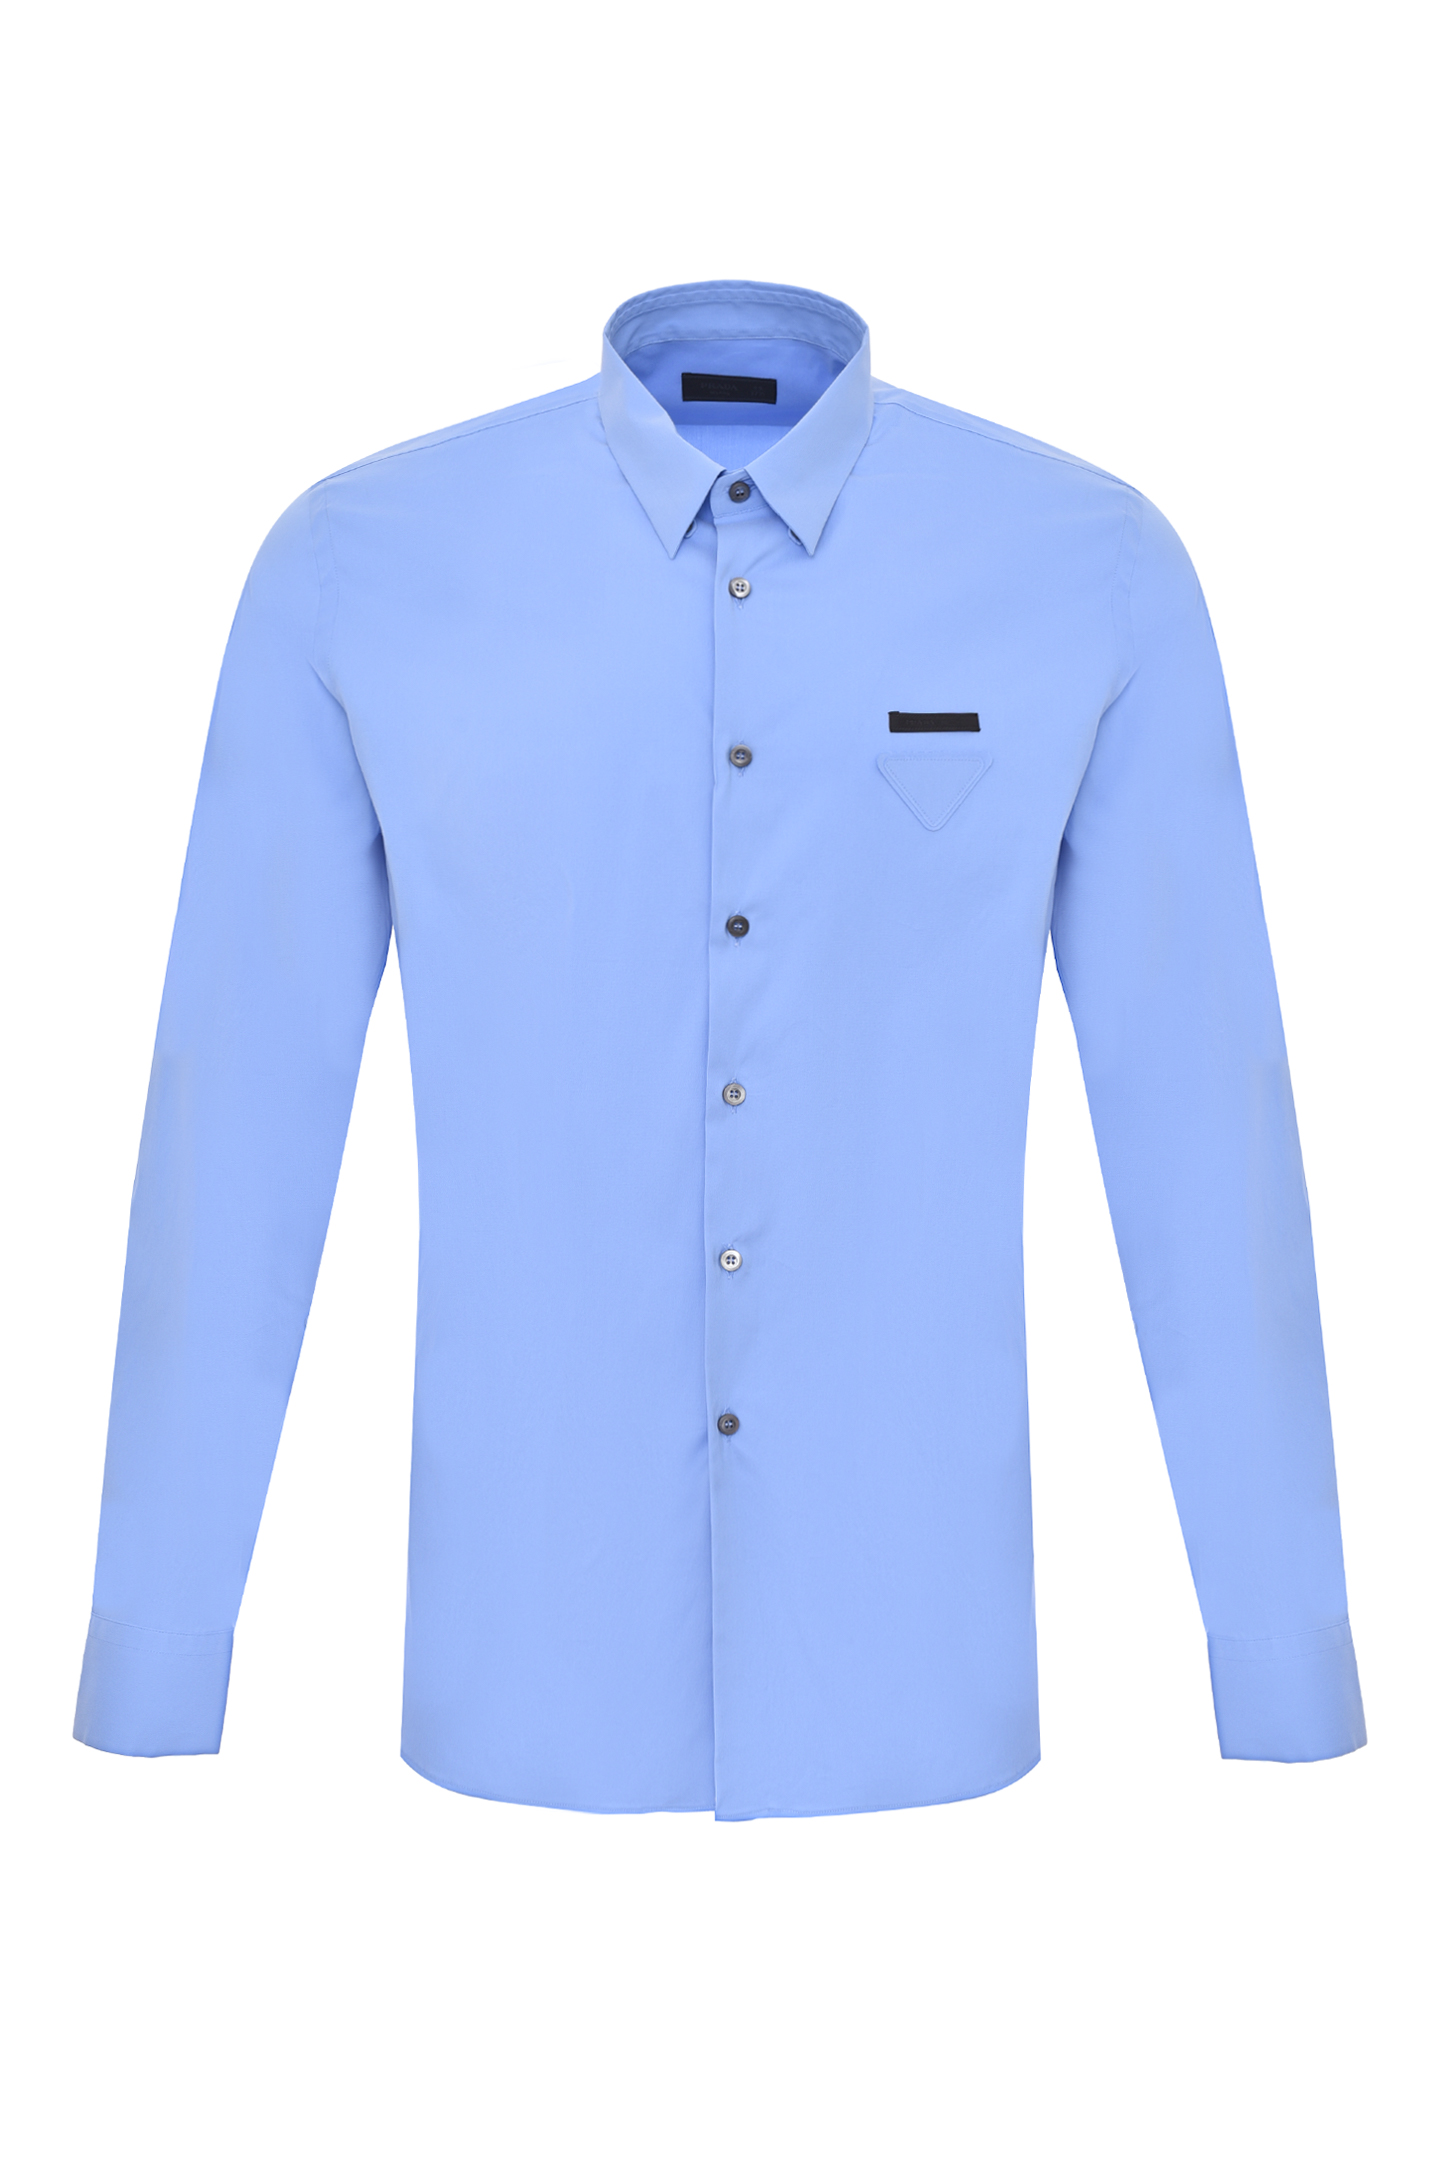 Рубашка PRADA UCN259 F62, цвет: Голубой, Мужской